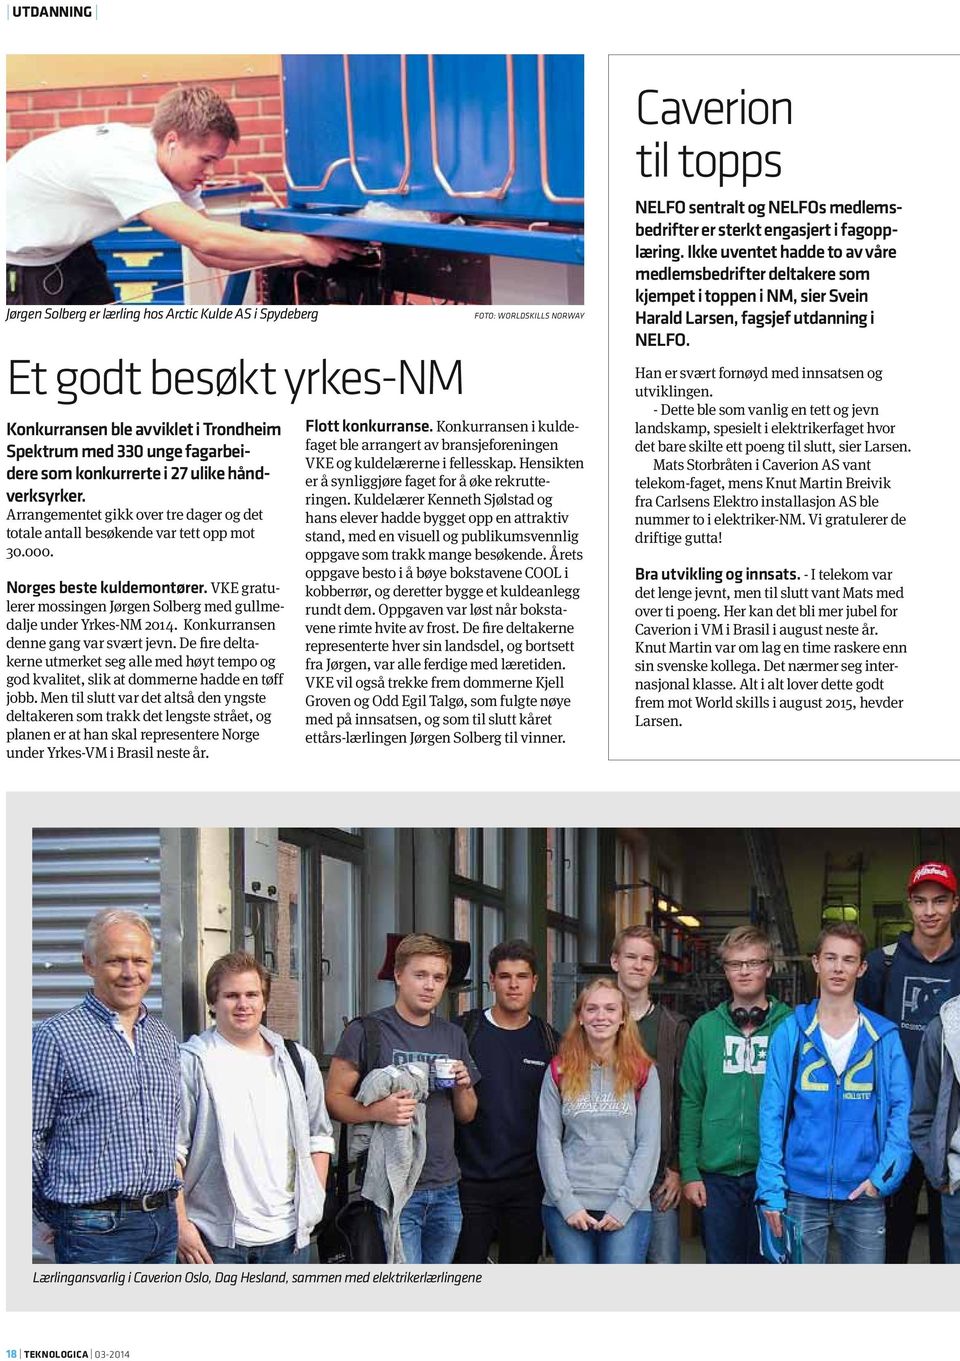 VKE gratulerer mossingen Jørgen Solberg med gullmedalje under Yrkes-NM 2014. Konkurransen denne gang var svært jevn.